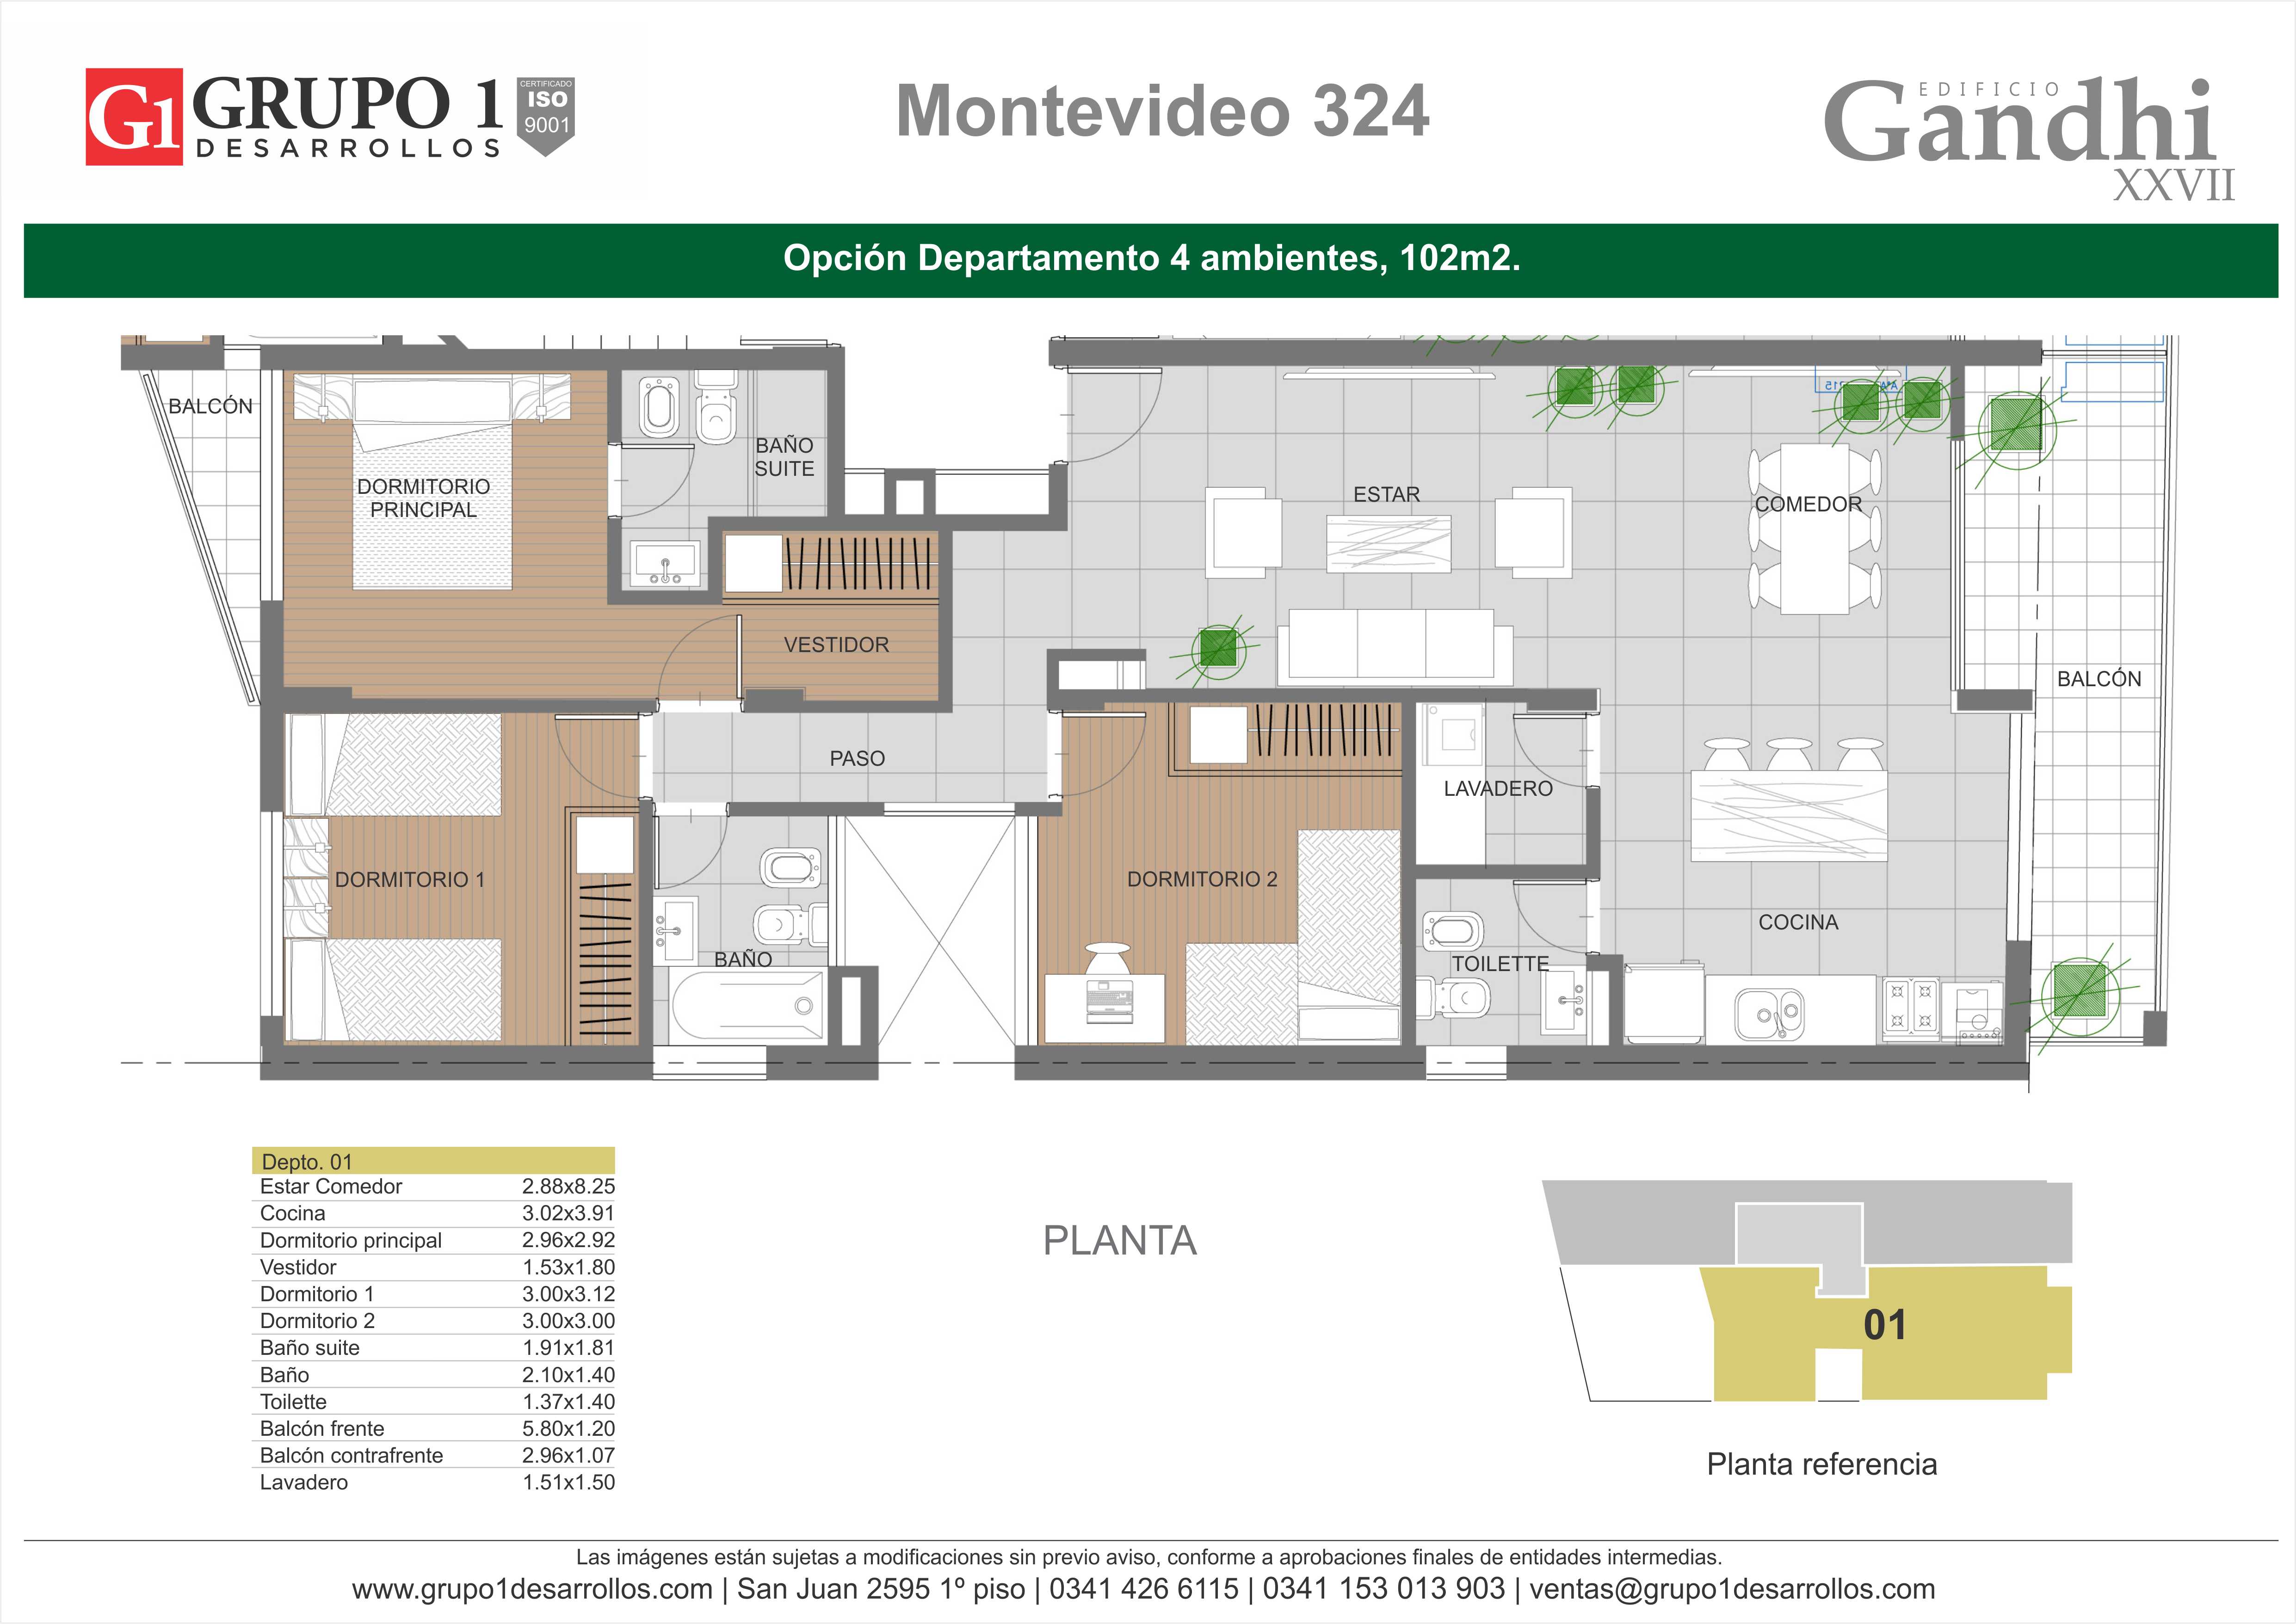 MONTEVIDEO 324 - GANDHI 27